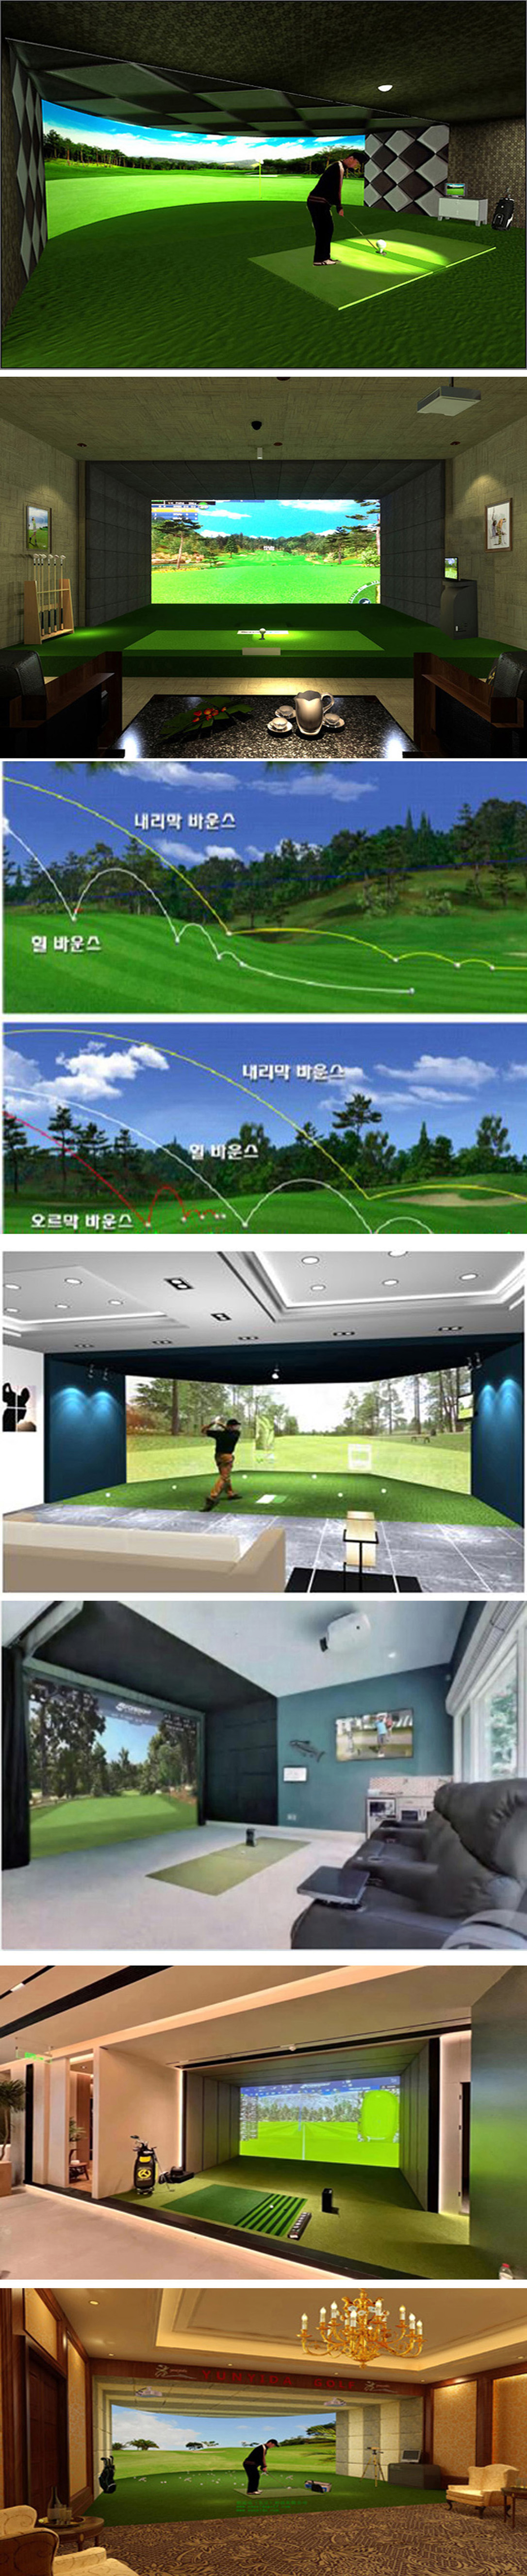 模拟高尔夫球场大型球馆 1.jpg